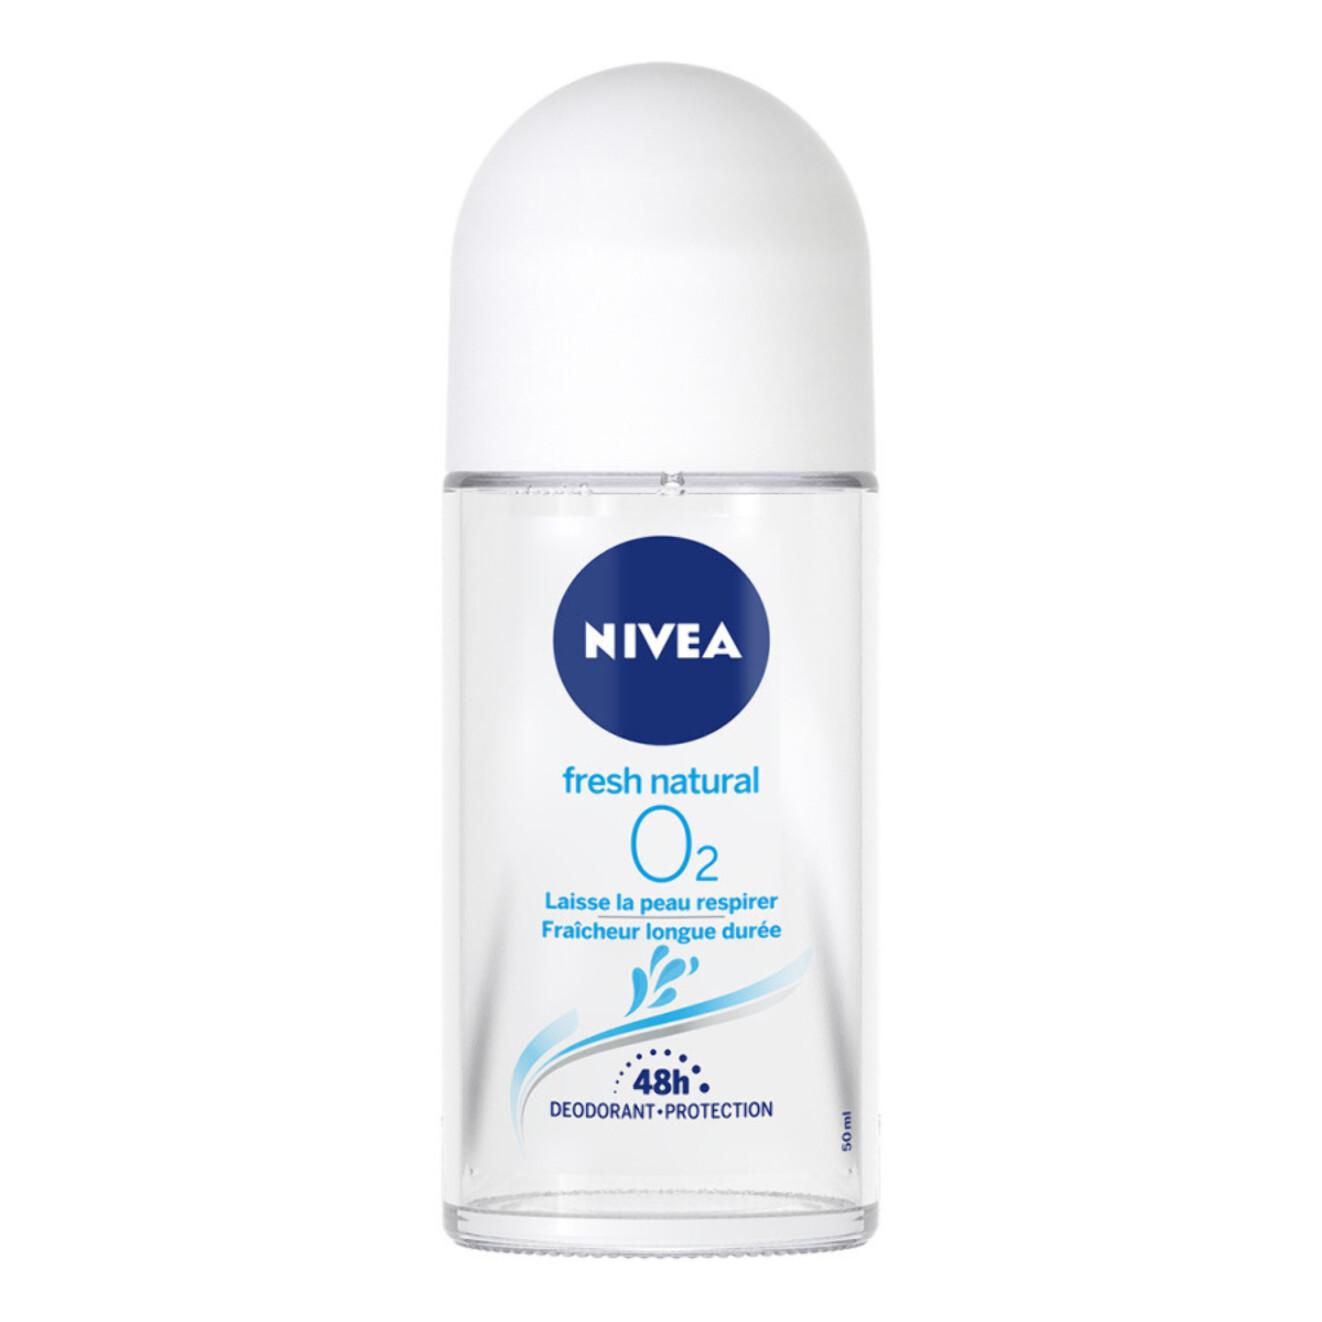 Pack de 3 - NIVEA - Déodorant Bille Femme Protection Longue Durée Fresh Natural O2 50ml